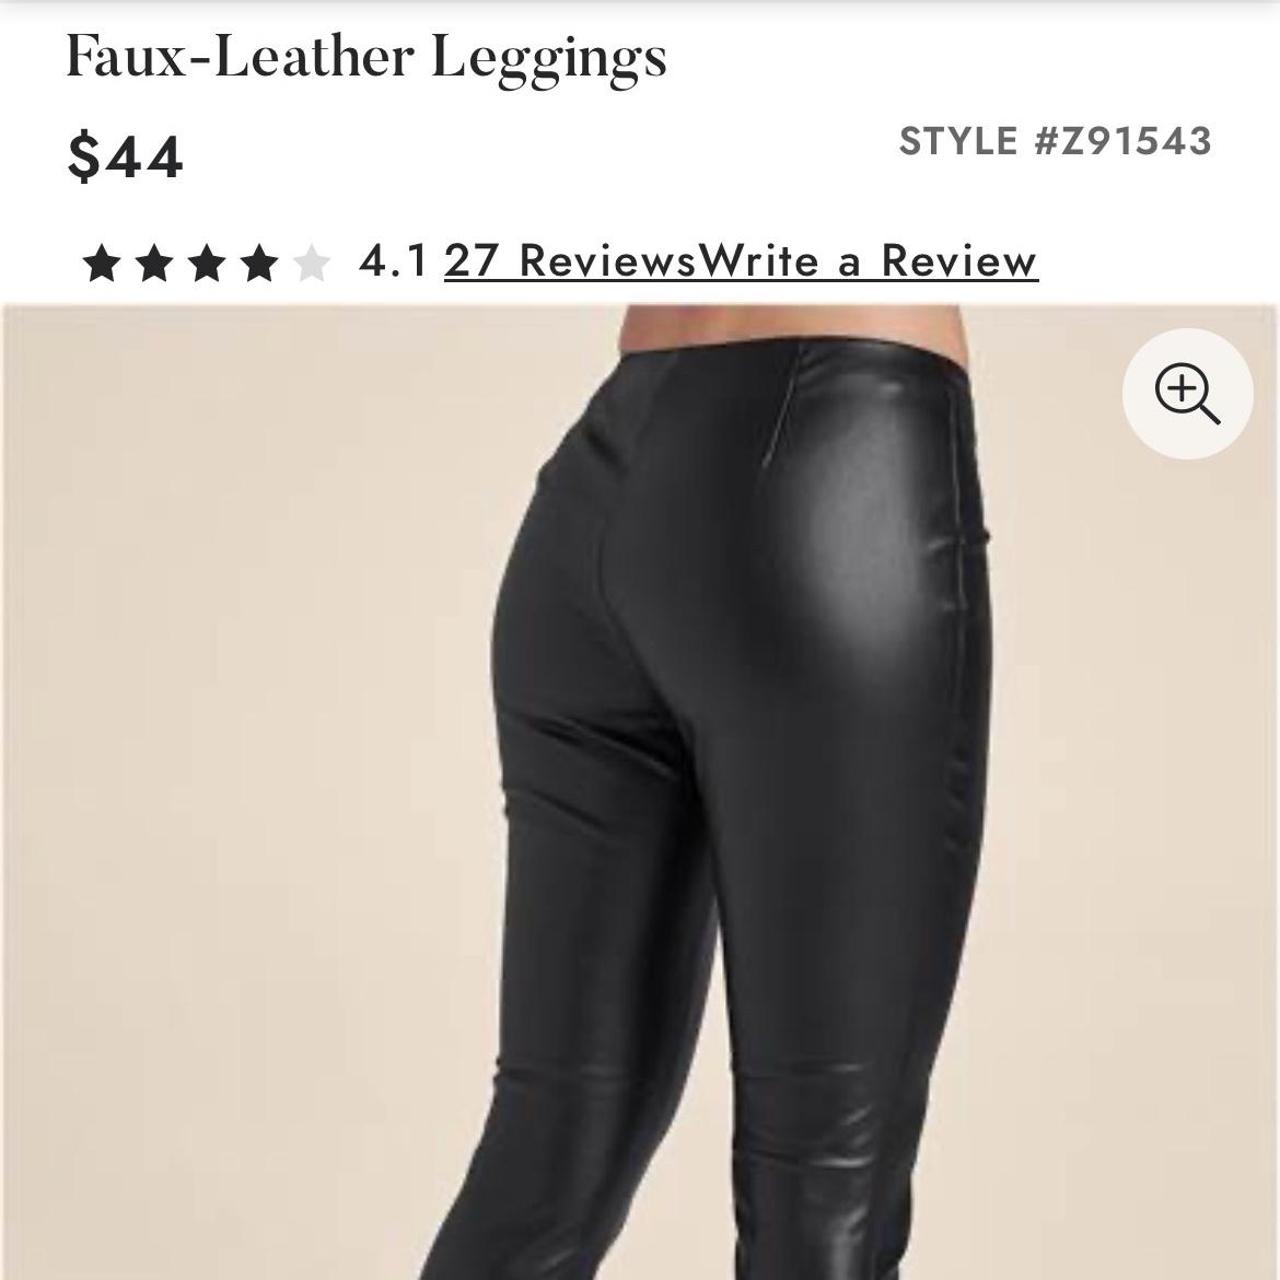 Faux-Leather Leggings in Black, VENUS